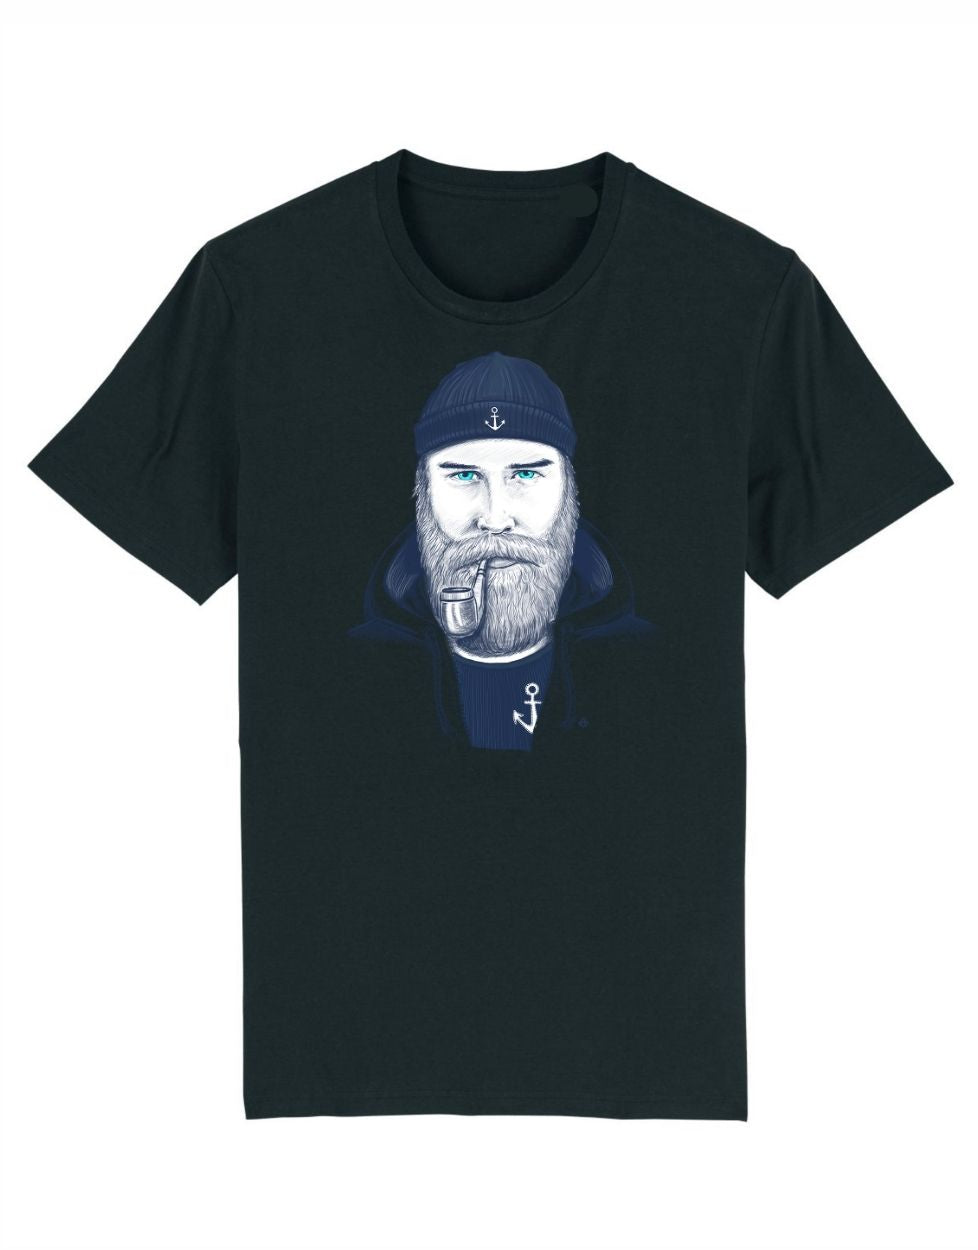 Seemann Herren T-Shirt schwarz. Cooles black T Shirt für Männer Seemann Design. 100% Bio-Baumwolle Fairtrade Vegan Küstenkalle Off-to-Live maritim